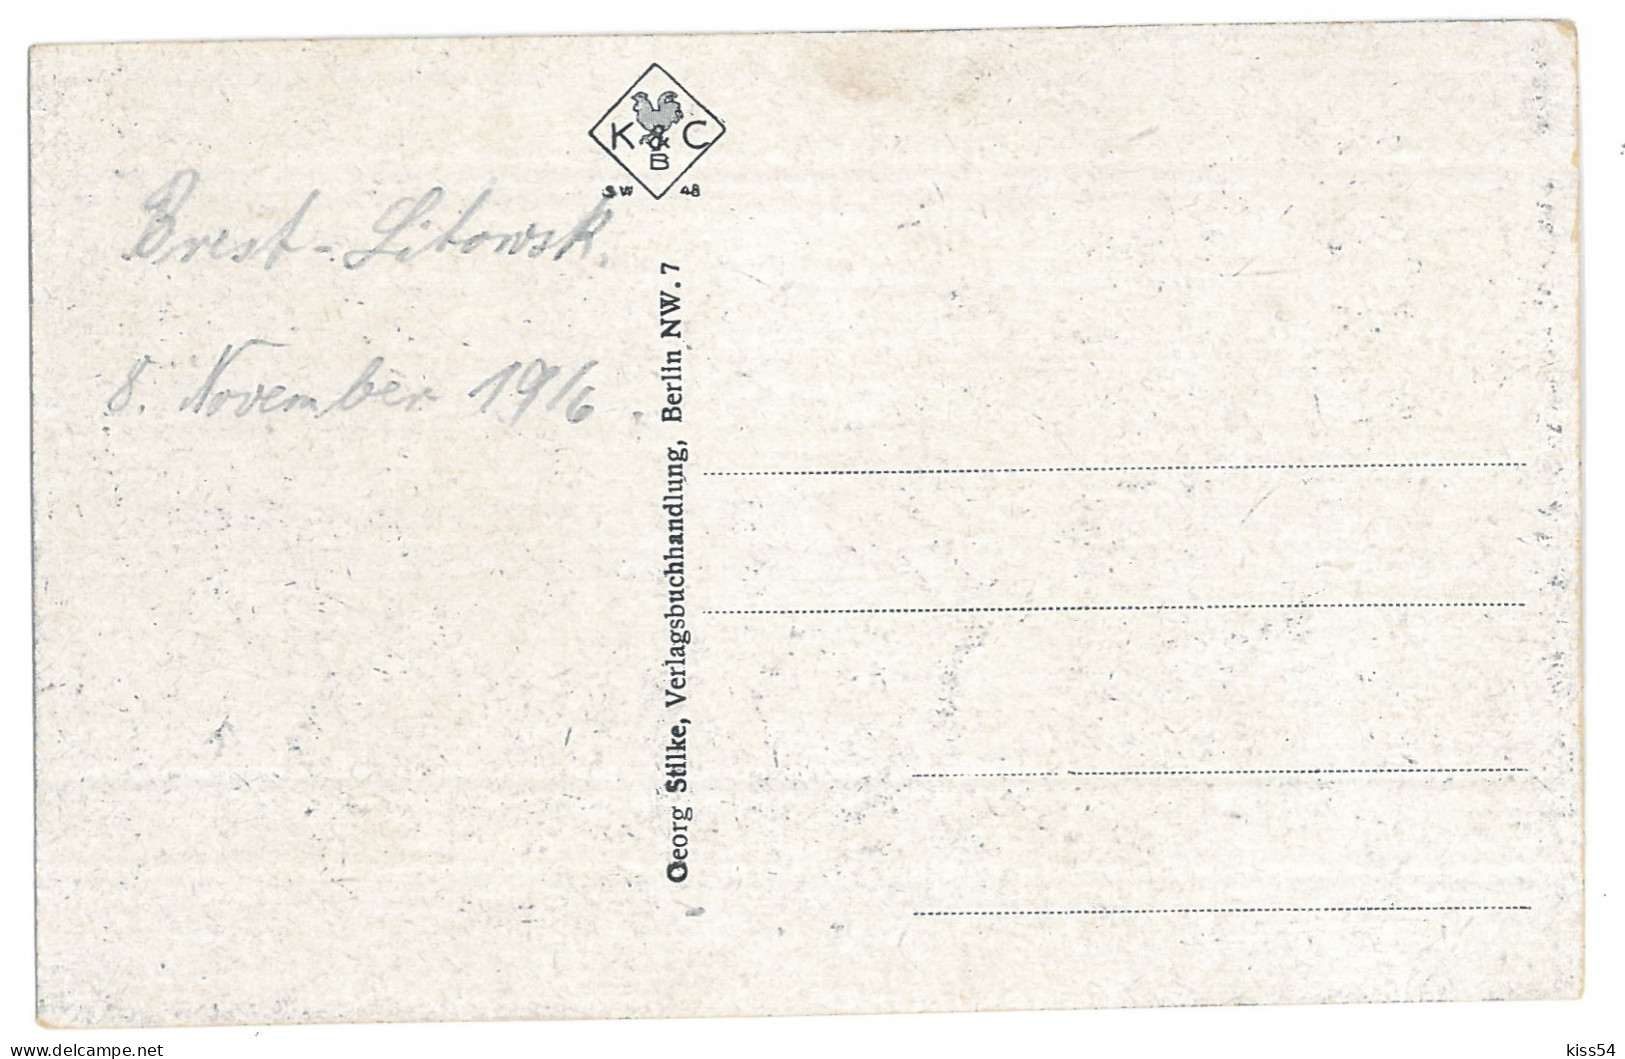 BL 28 - 13825 BREST-LITOWSK, Belarus - Old Postcard - Unused - 1916 - Weißrussland